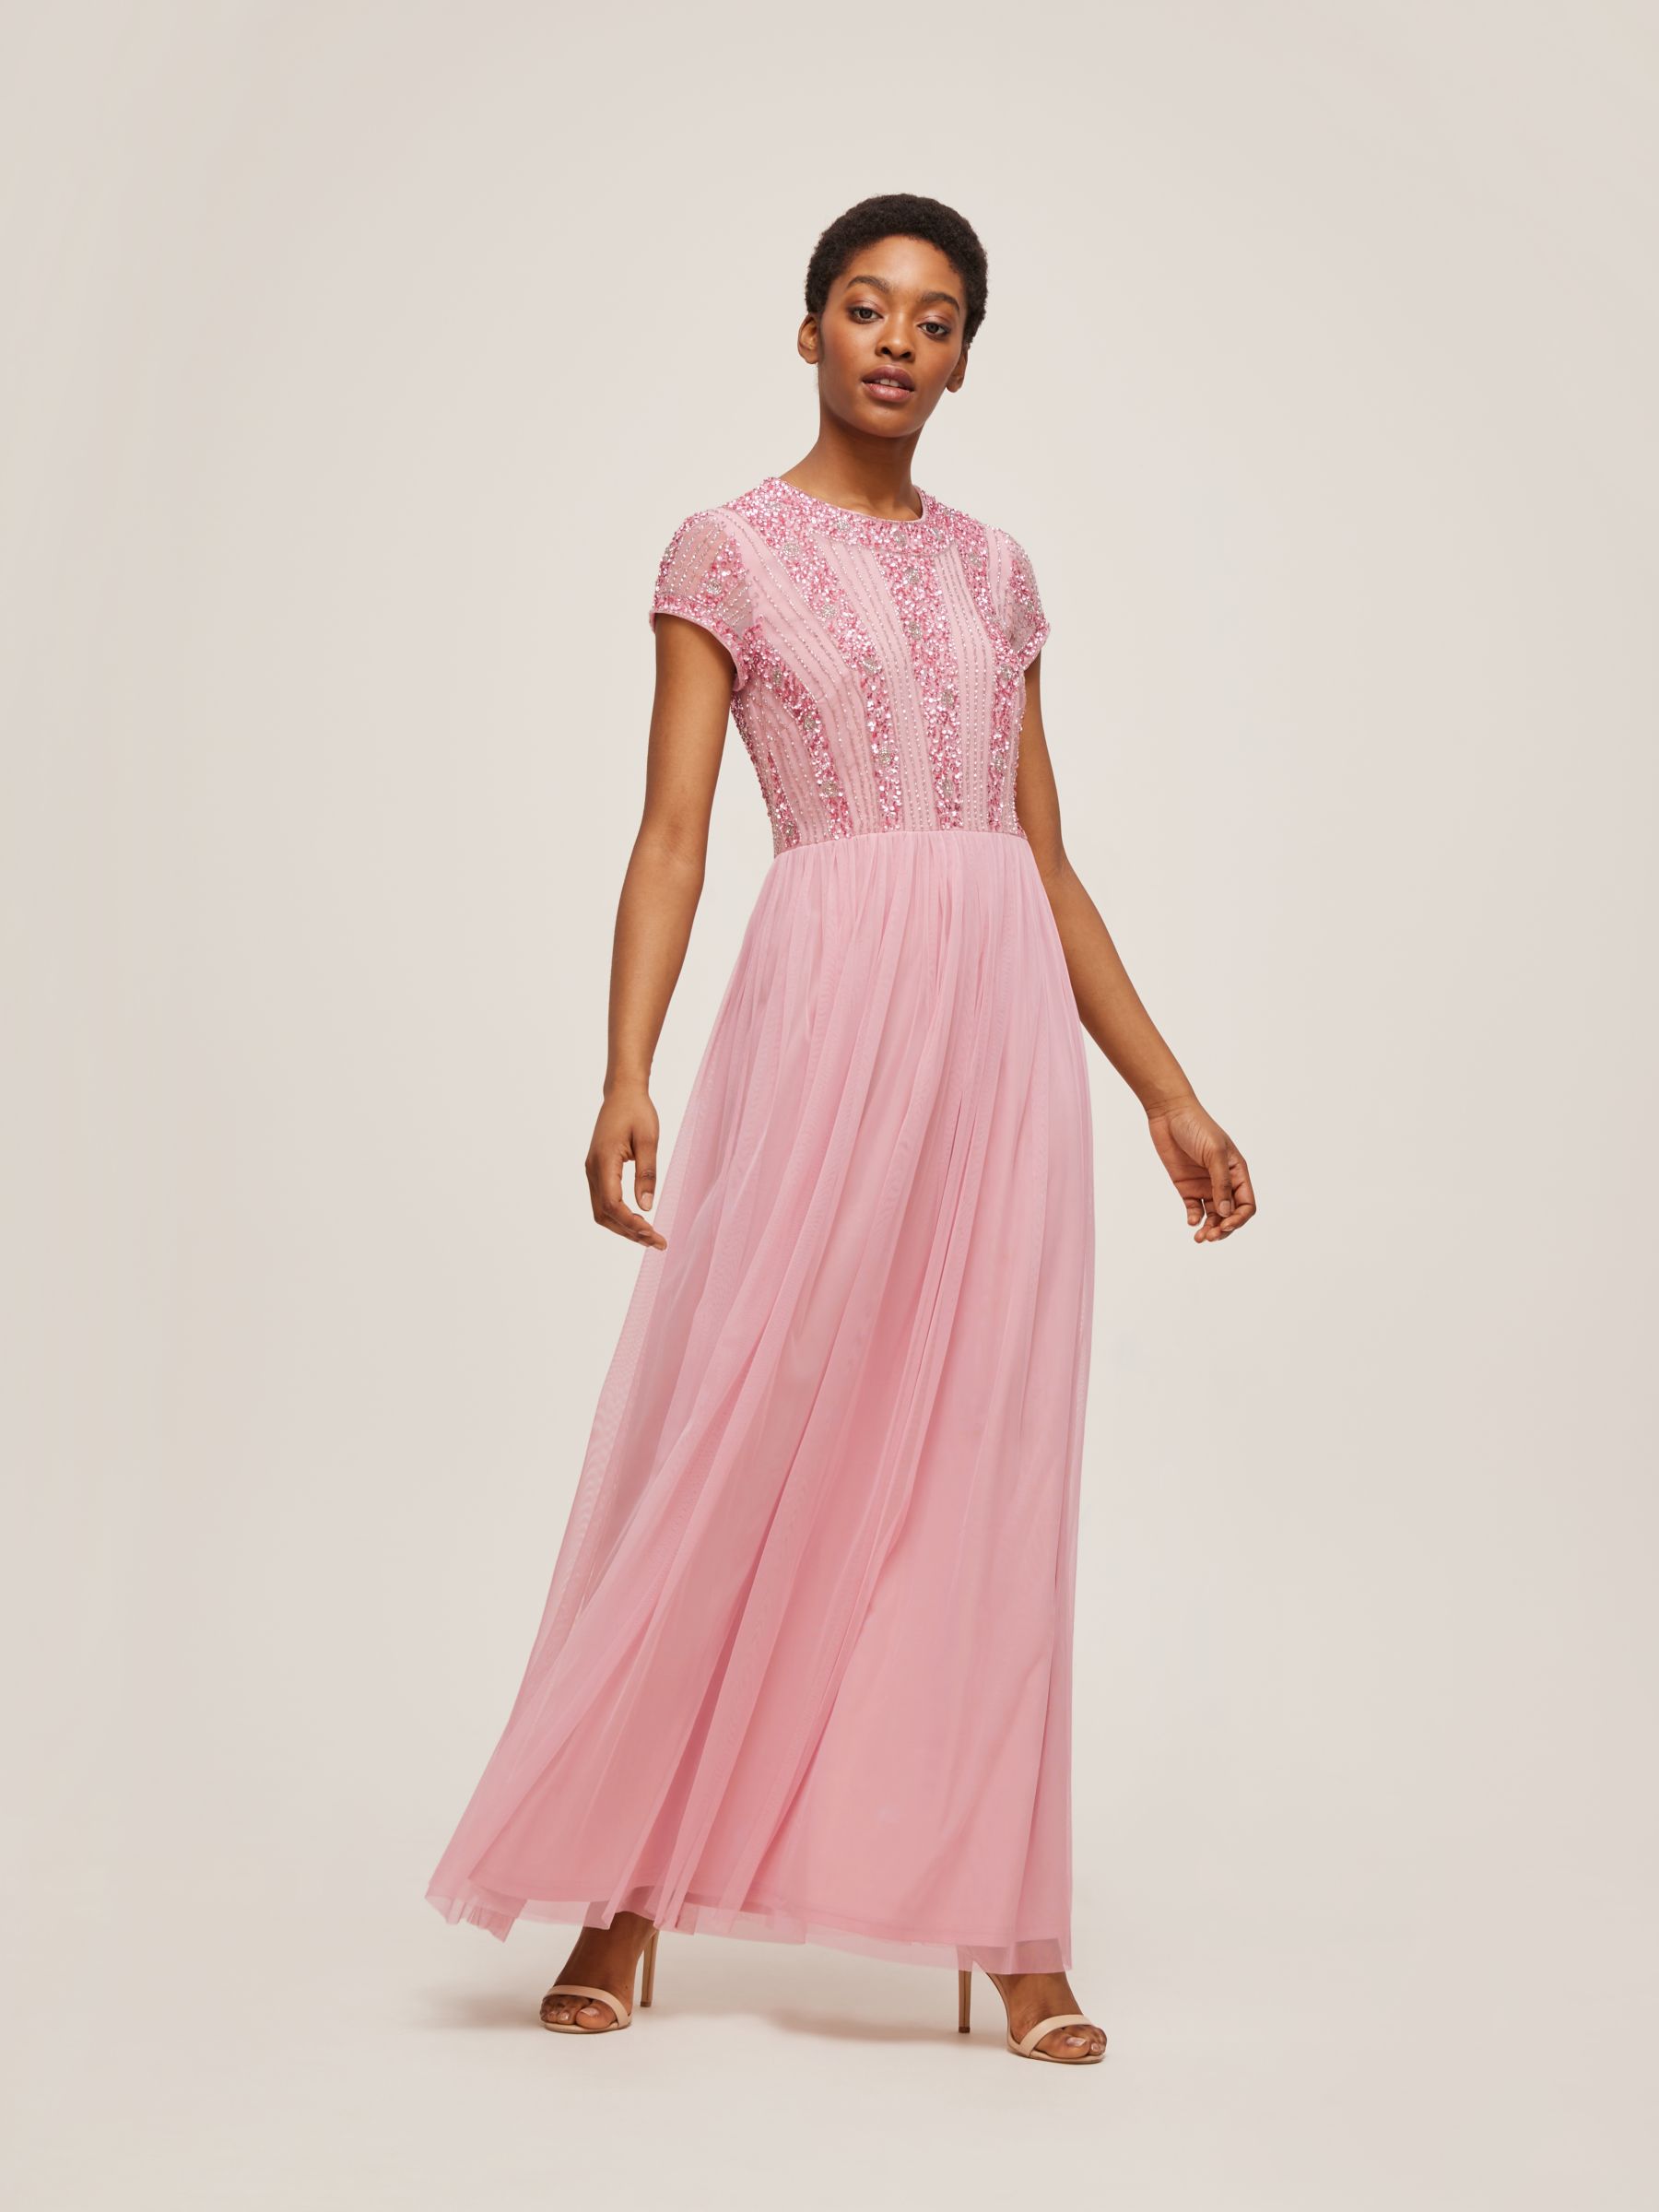 Lace & Beads Maha Embellished Bodice Maxi Dress, Mauve, 8